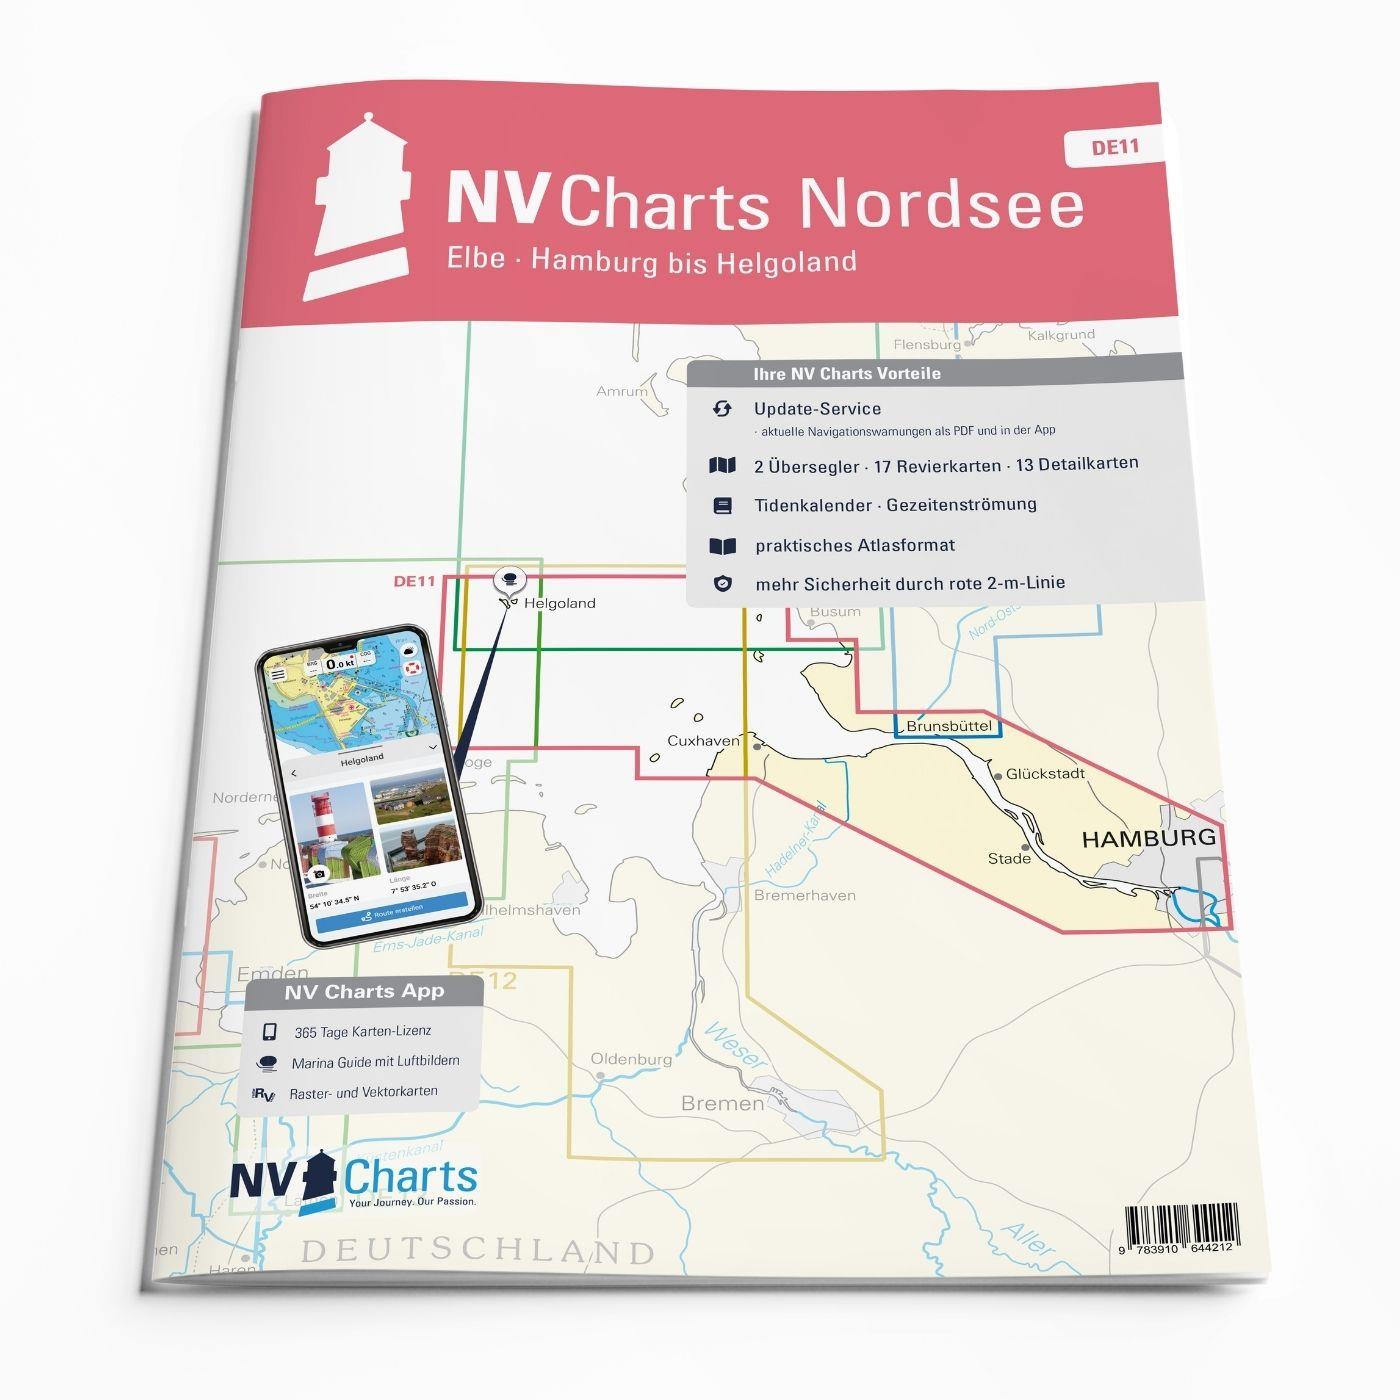 ABO - NV Charts Nordsee DE11 - Elbe, Hamburg bis Helgoland